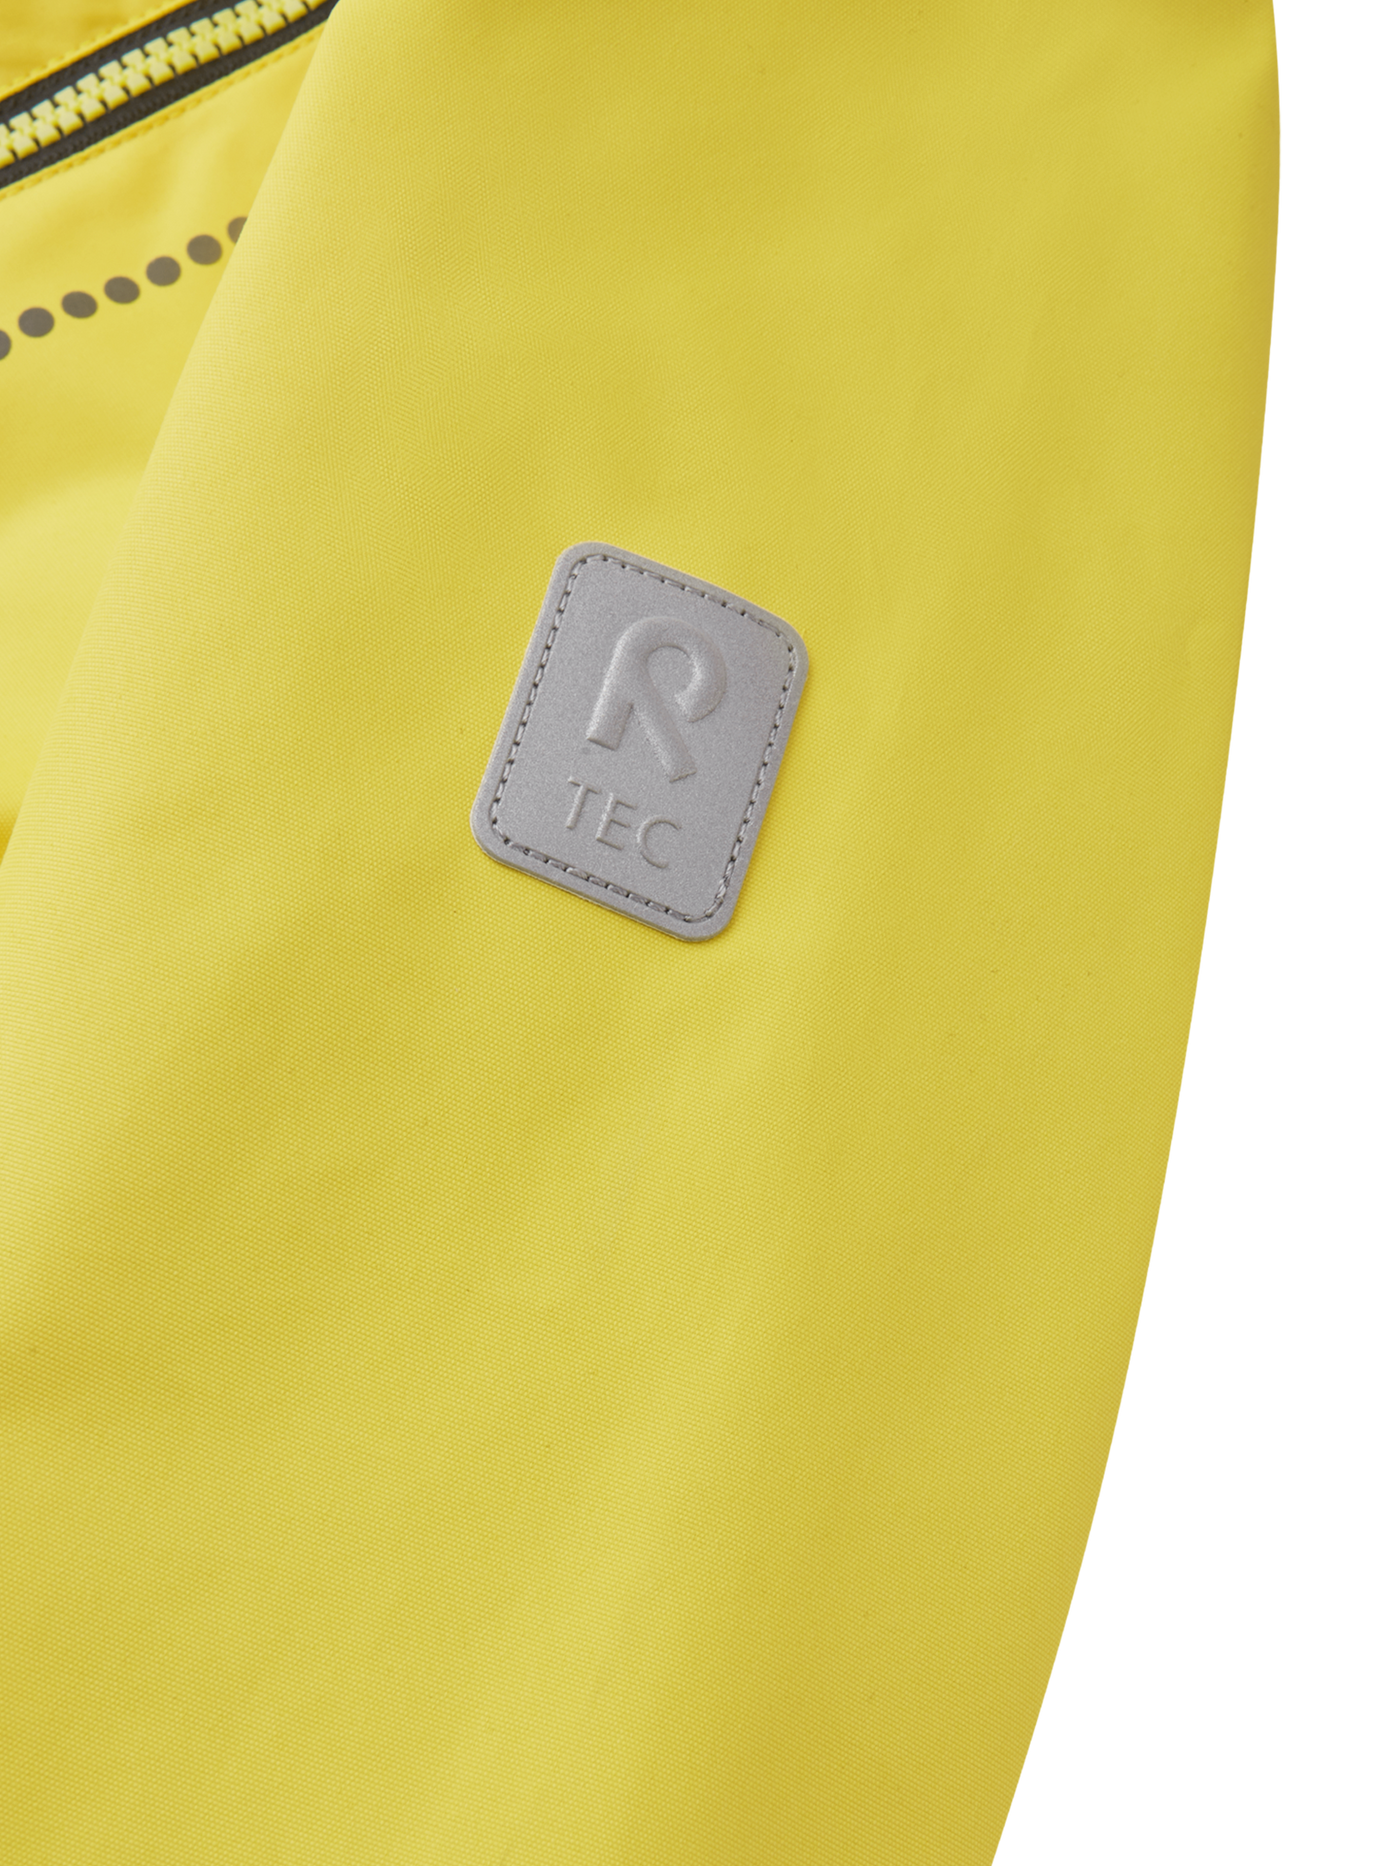 Reiman Kapelli Reimatec välikausihaalari keltaisessa värissä lähikuvassa Reimatec-merkki